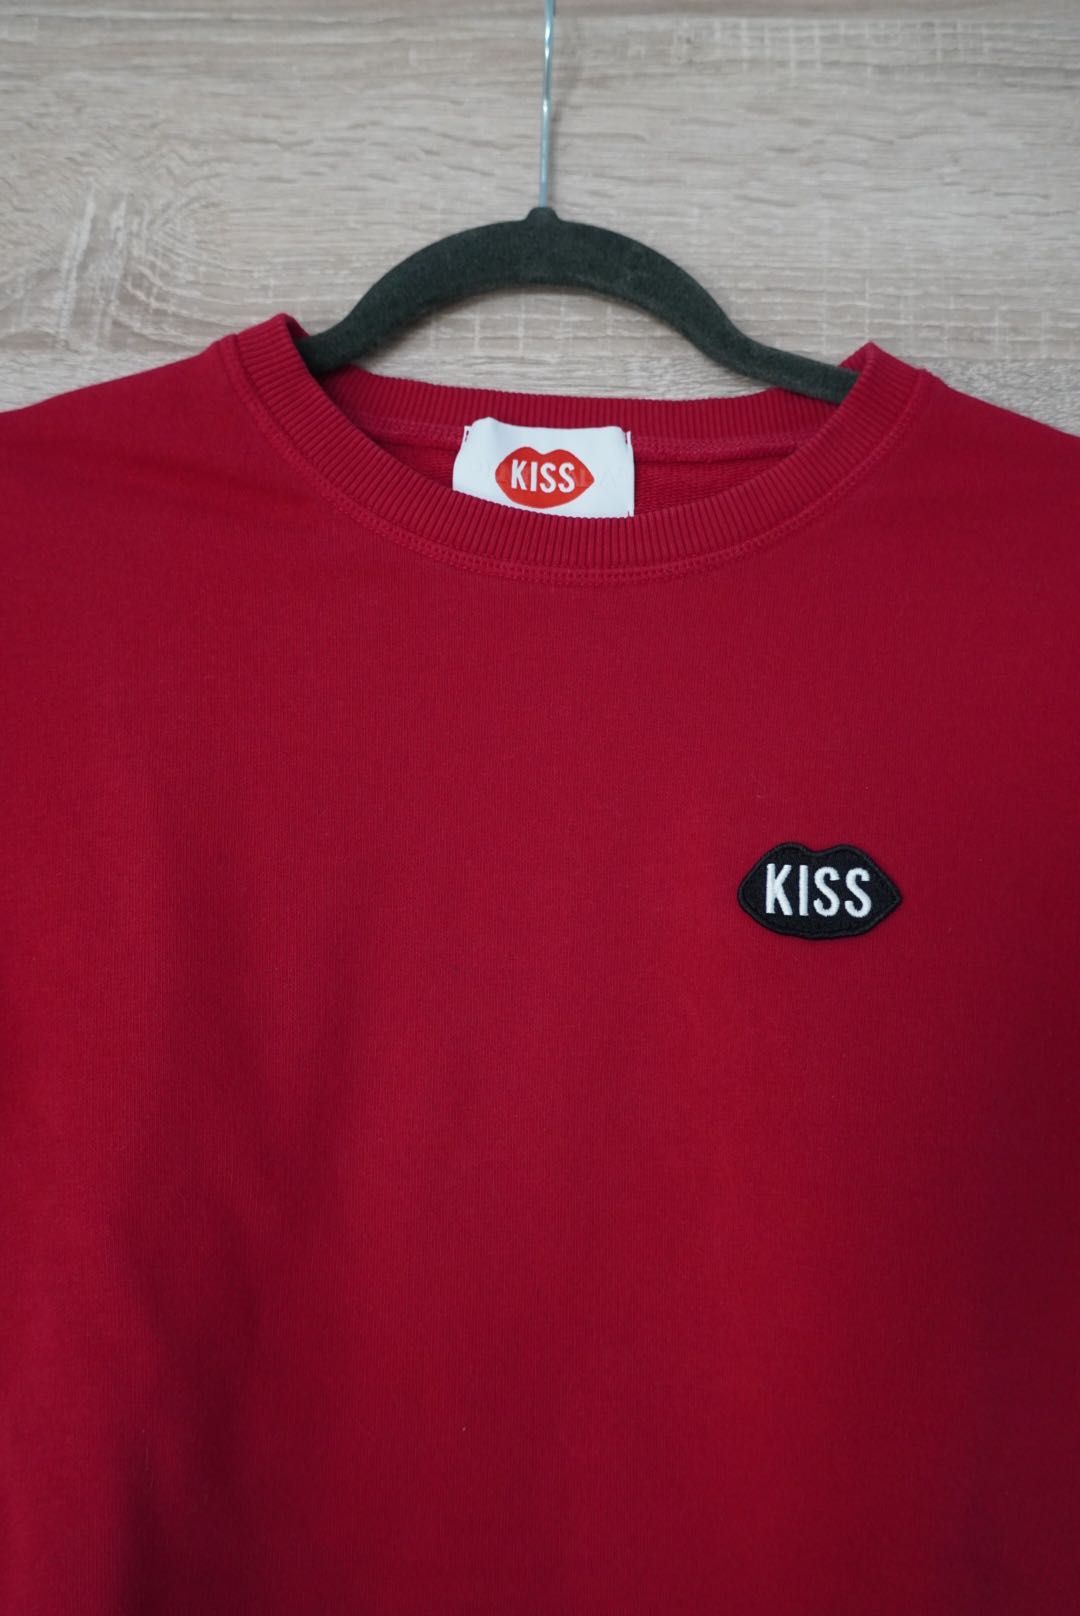 Czerwona bawełniana bluza PLNY lala kiss XXS / S